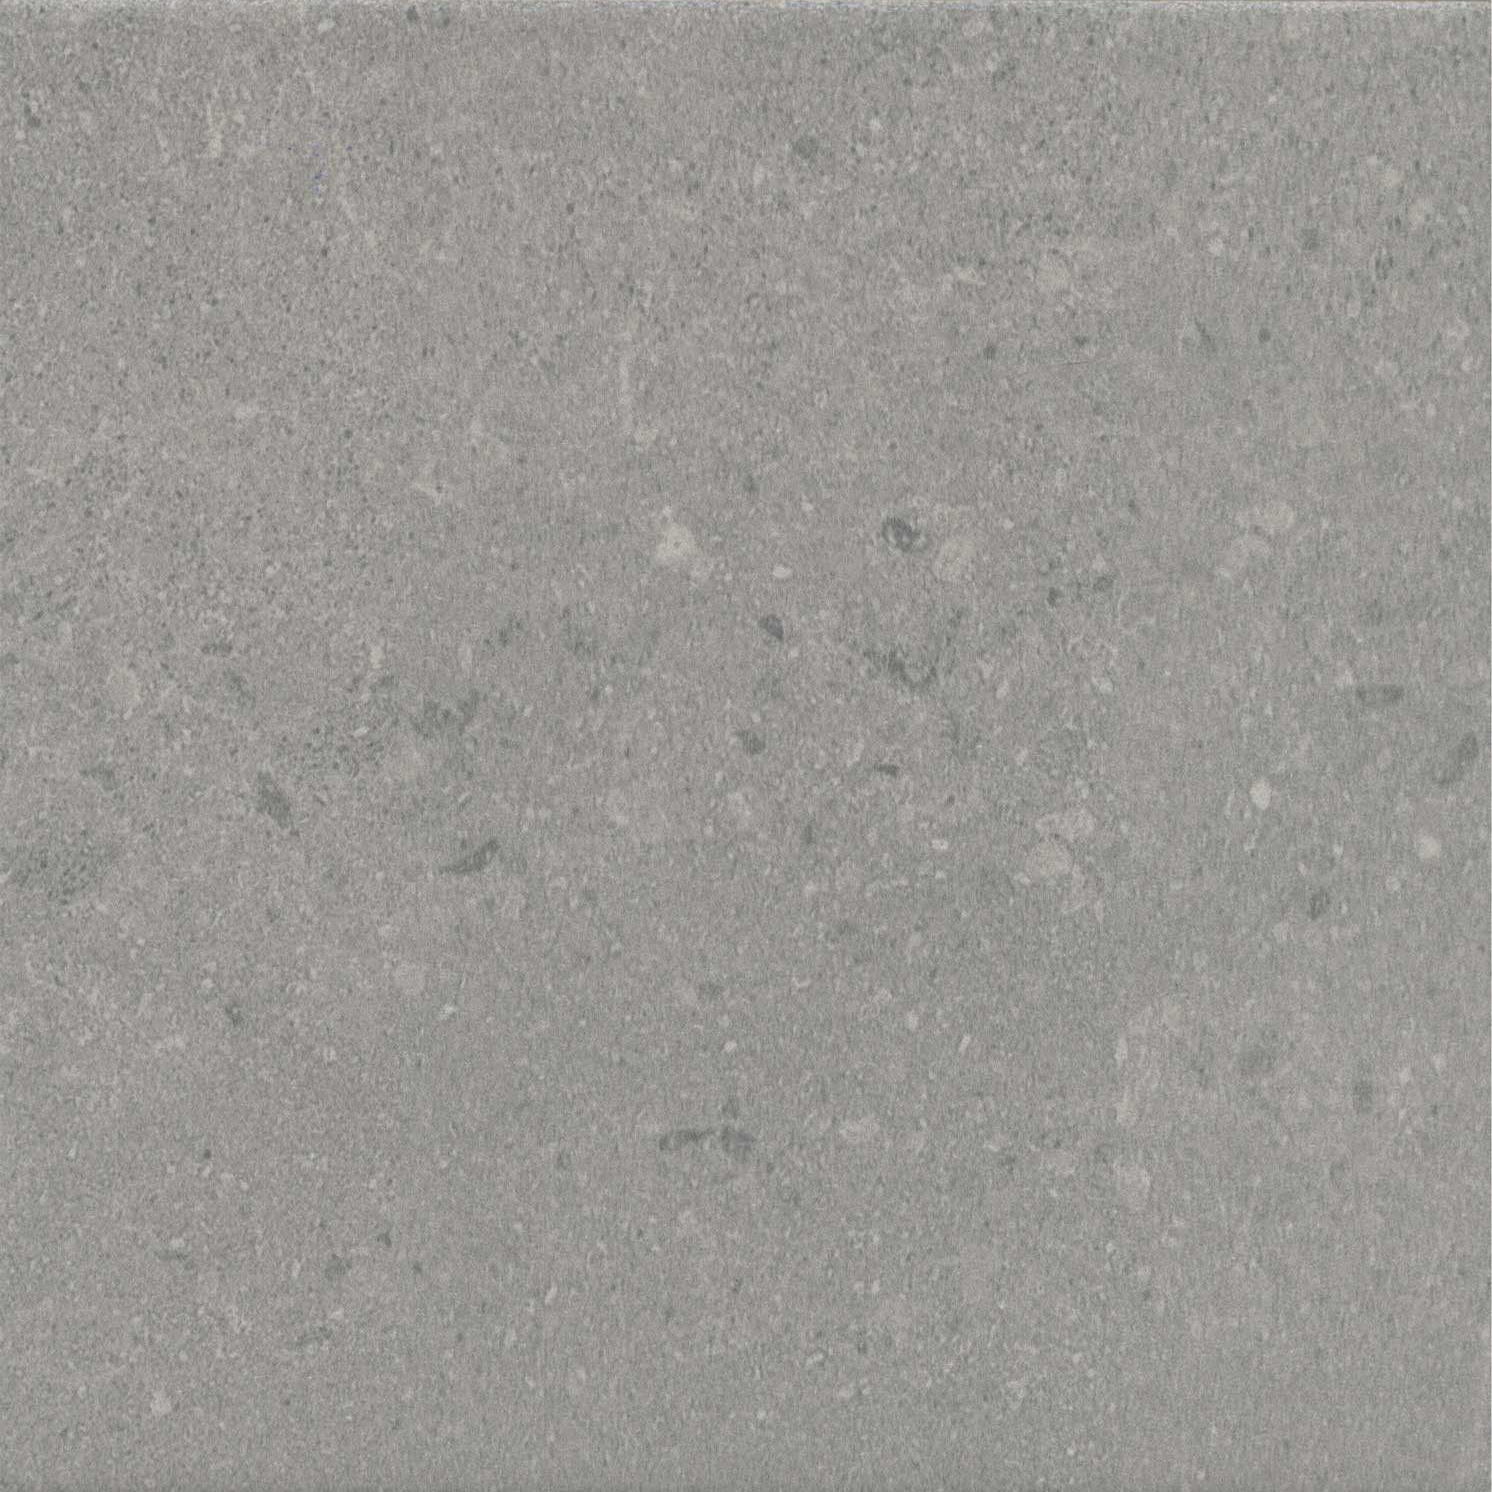 керамическая плитка kerama marazzi понти серый 20x20 матовый 5285 1 04 кв м Плитка Kerama Marazzi Milano Матрикс SG1590N серый 20x20x0,8 см